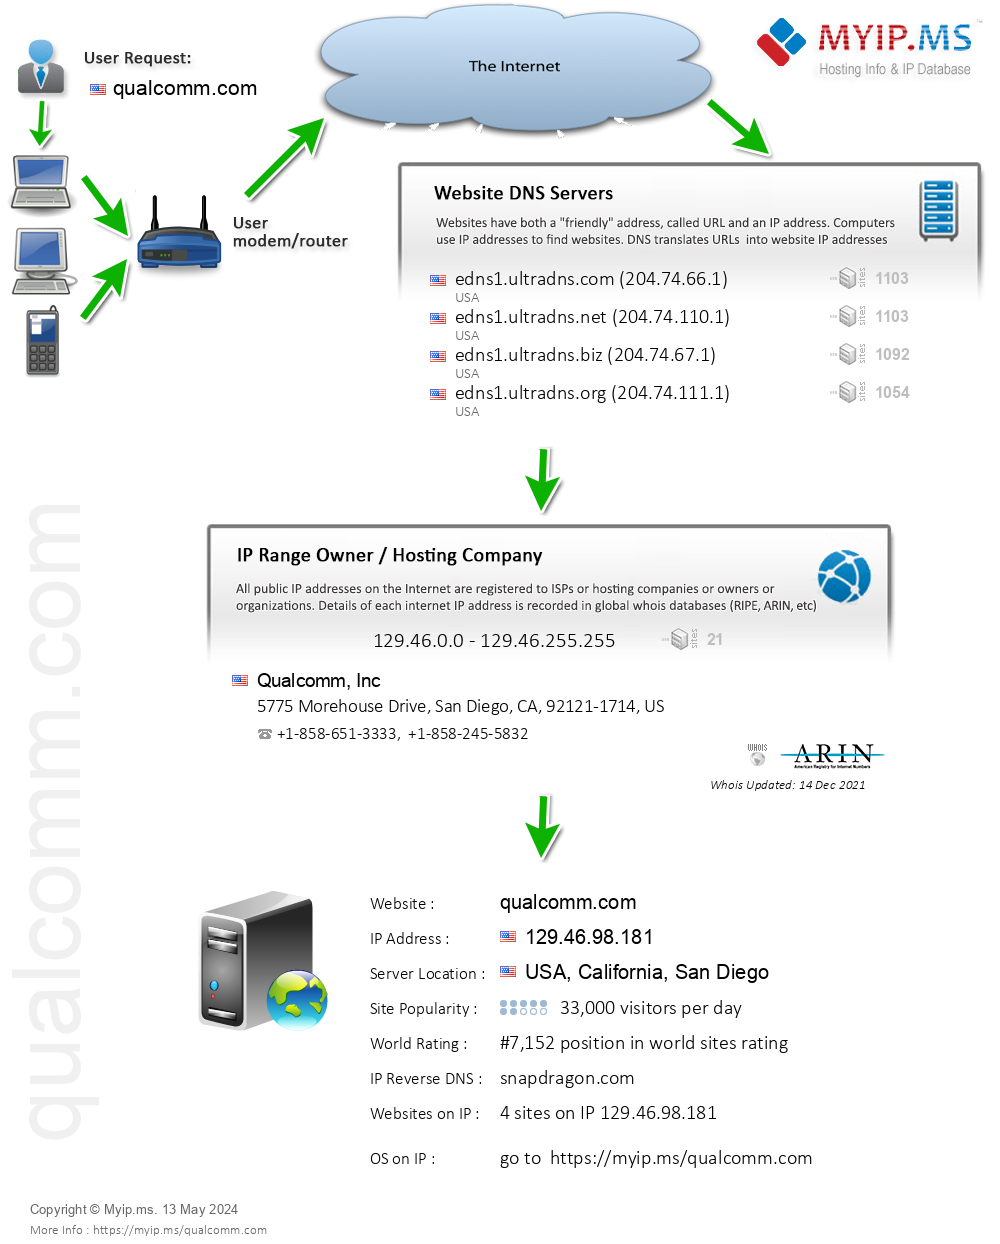 Qualcomm.com - Website Hosting Visual IP Diagram